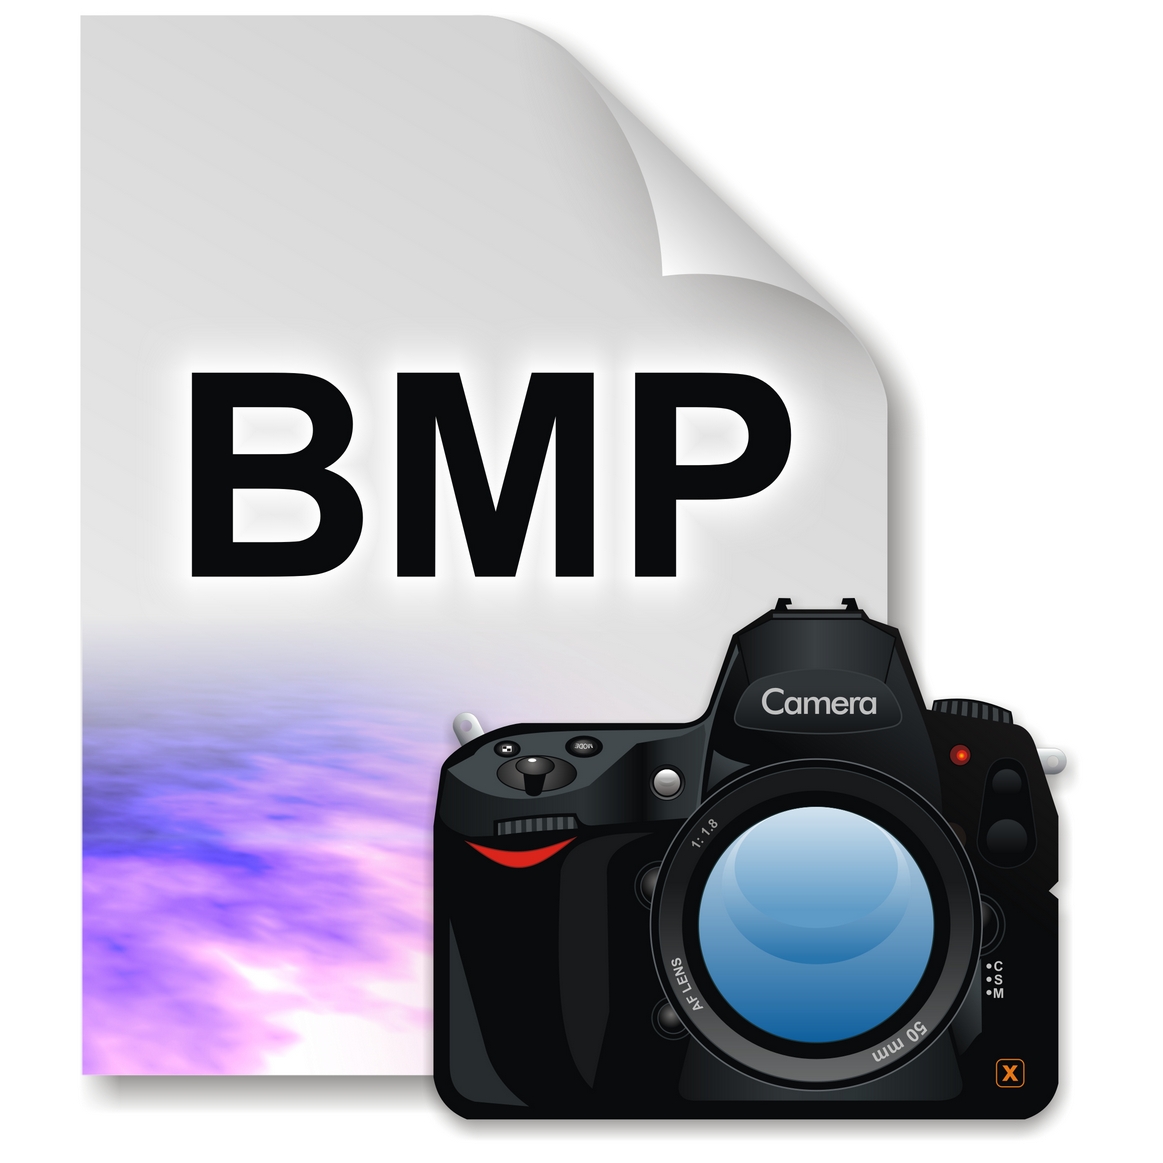 Bmp picture. Bmp Формат. Изображение bmp. Картинки bmp формата. Bmp (Формат файлов).